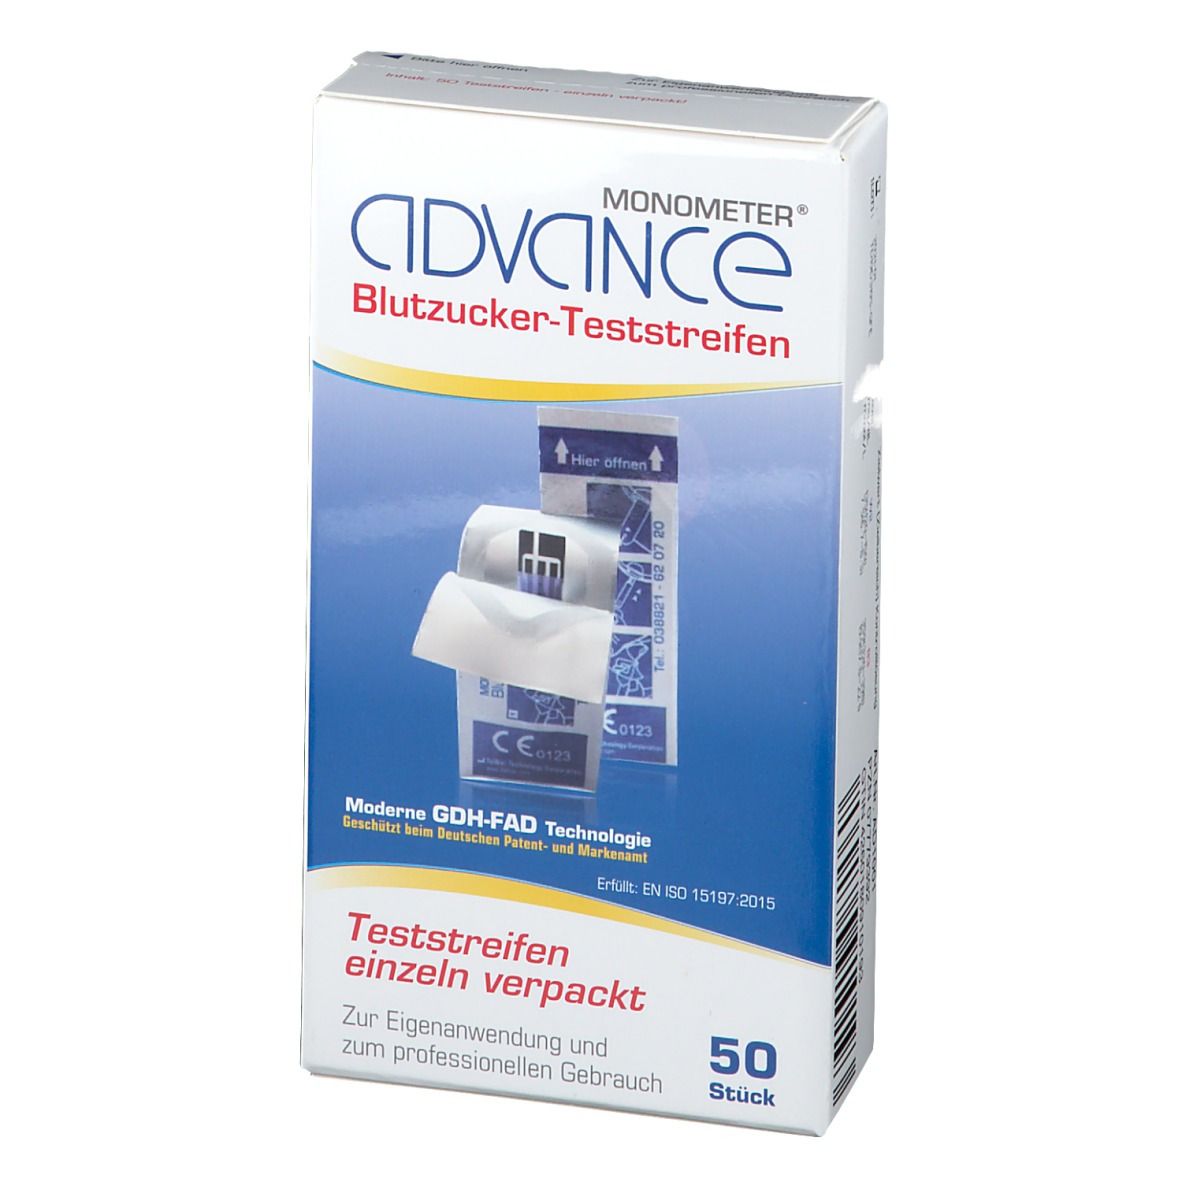 Advance Monometer® Blutzucker-Teststreifen GDH single